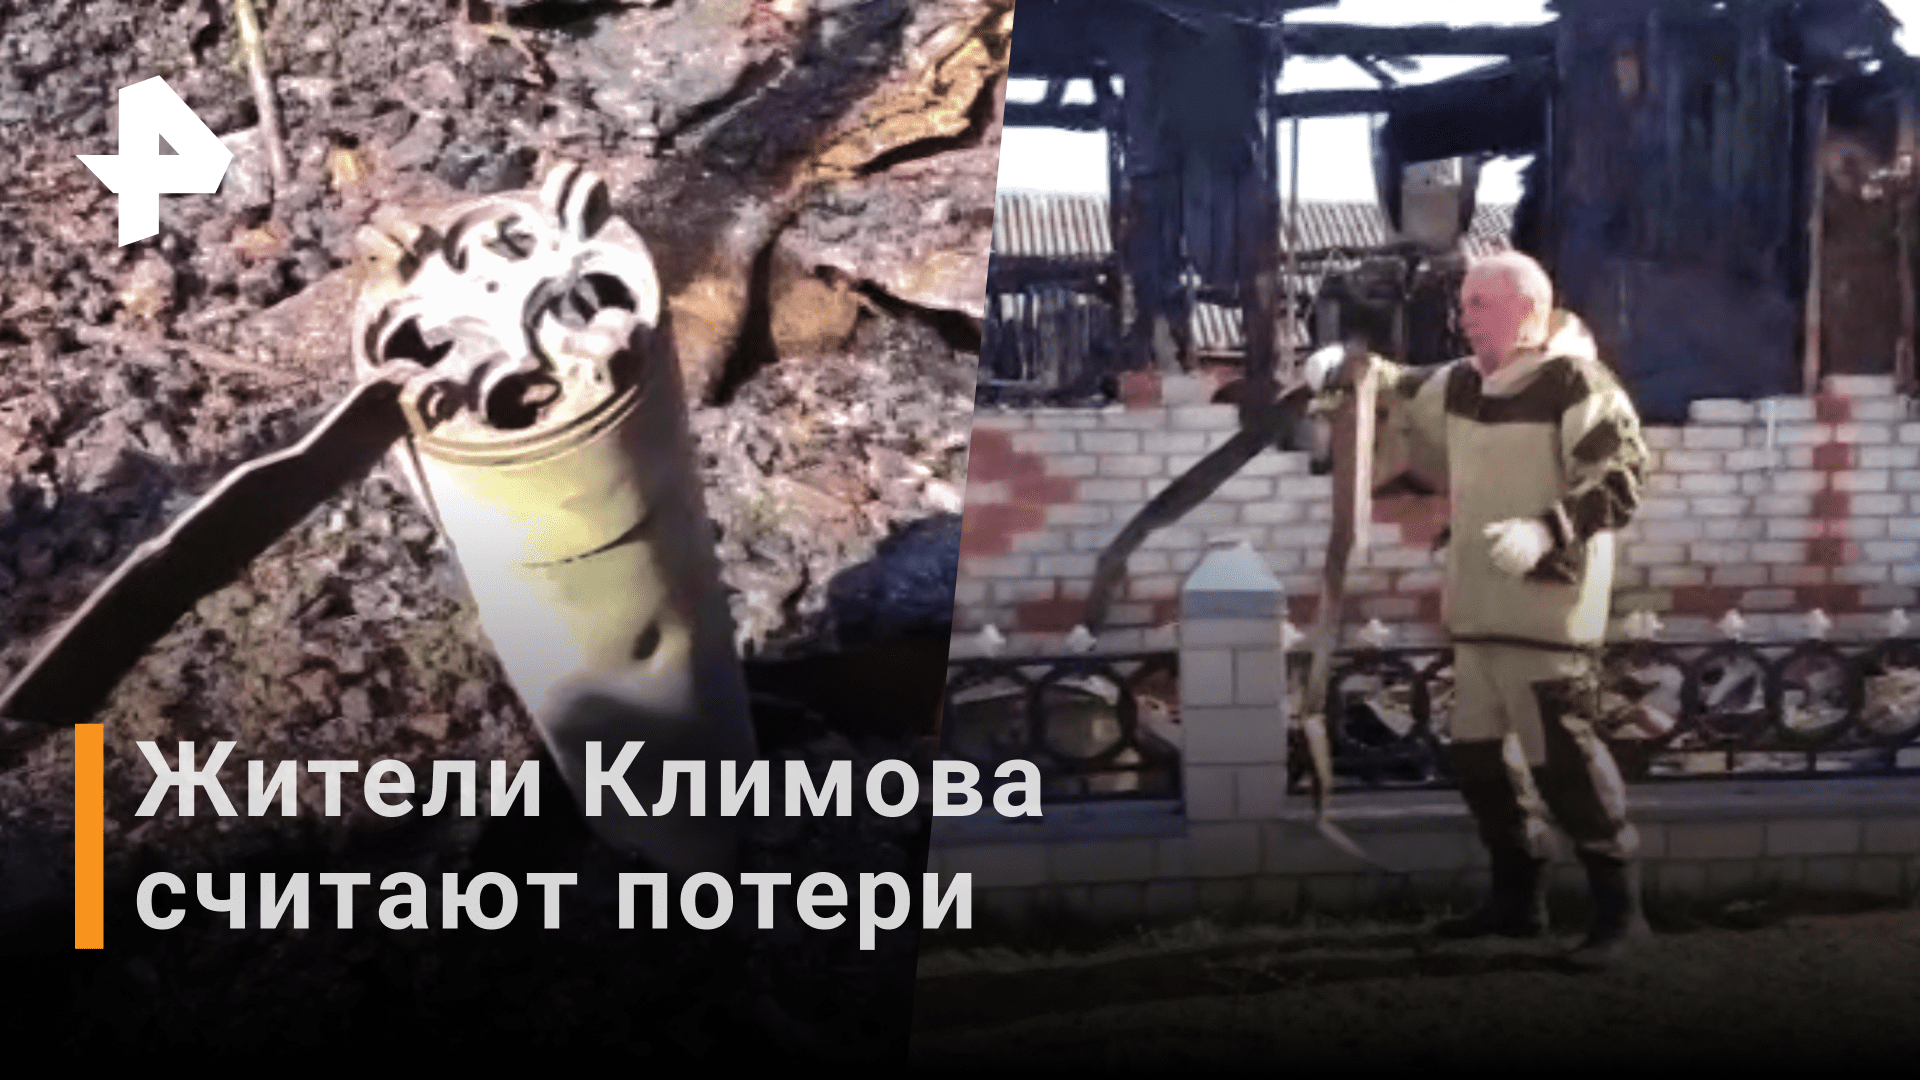 Двое детей пострадали в поселке Климово под Брянском после атаки ВСУ / РЕН Новости